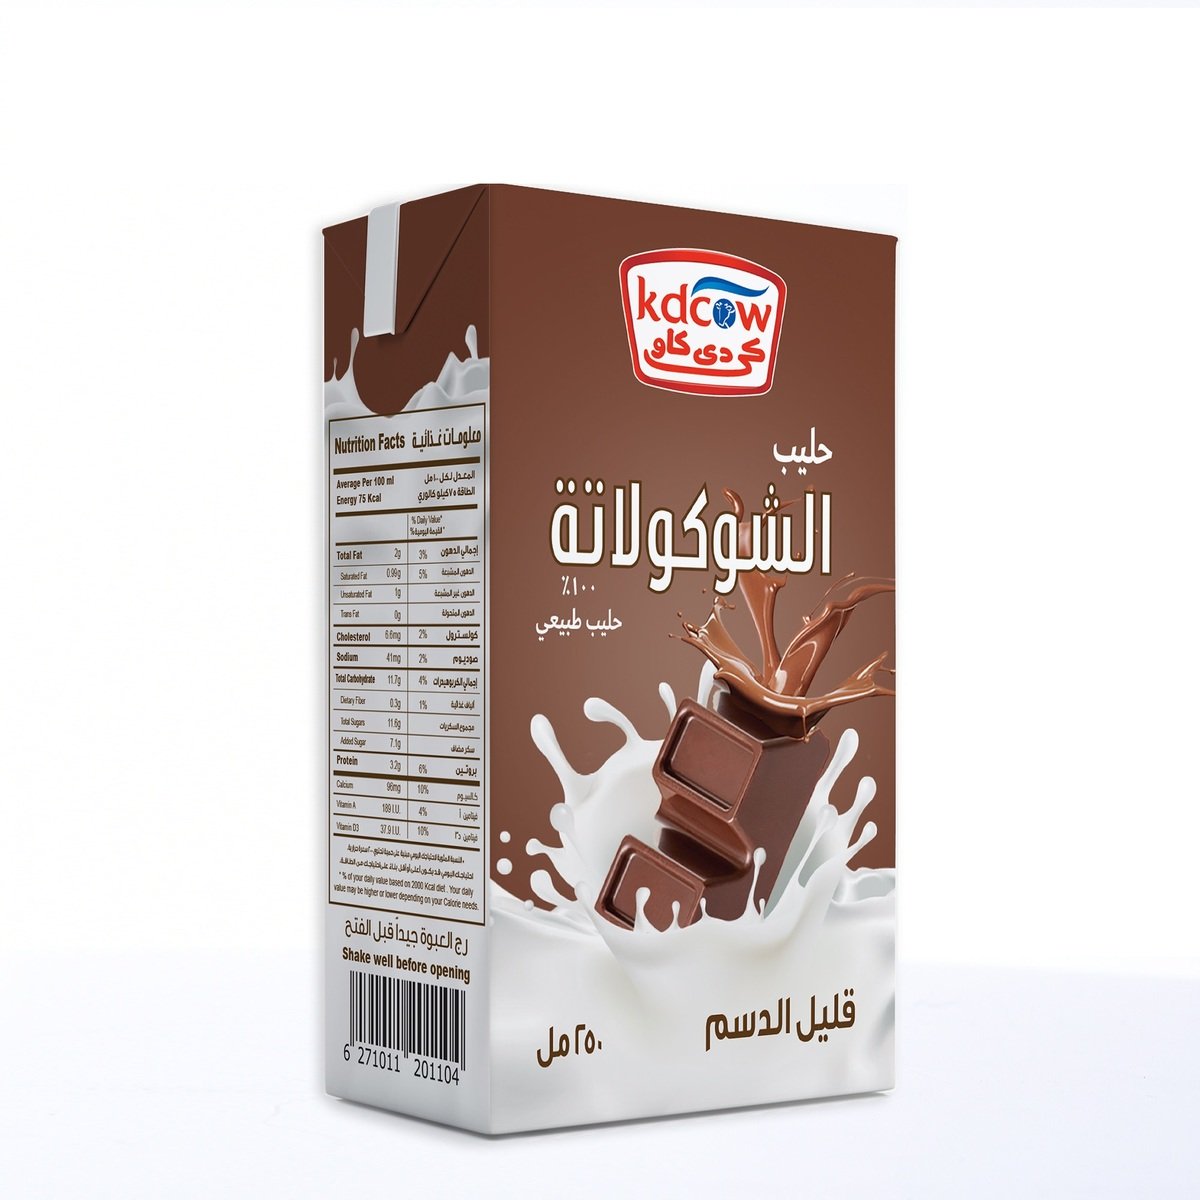 Kdcow Chocolate Flavoured Milk 6 x 250ml